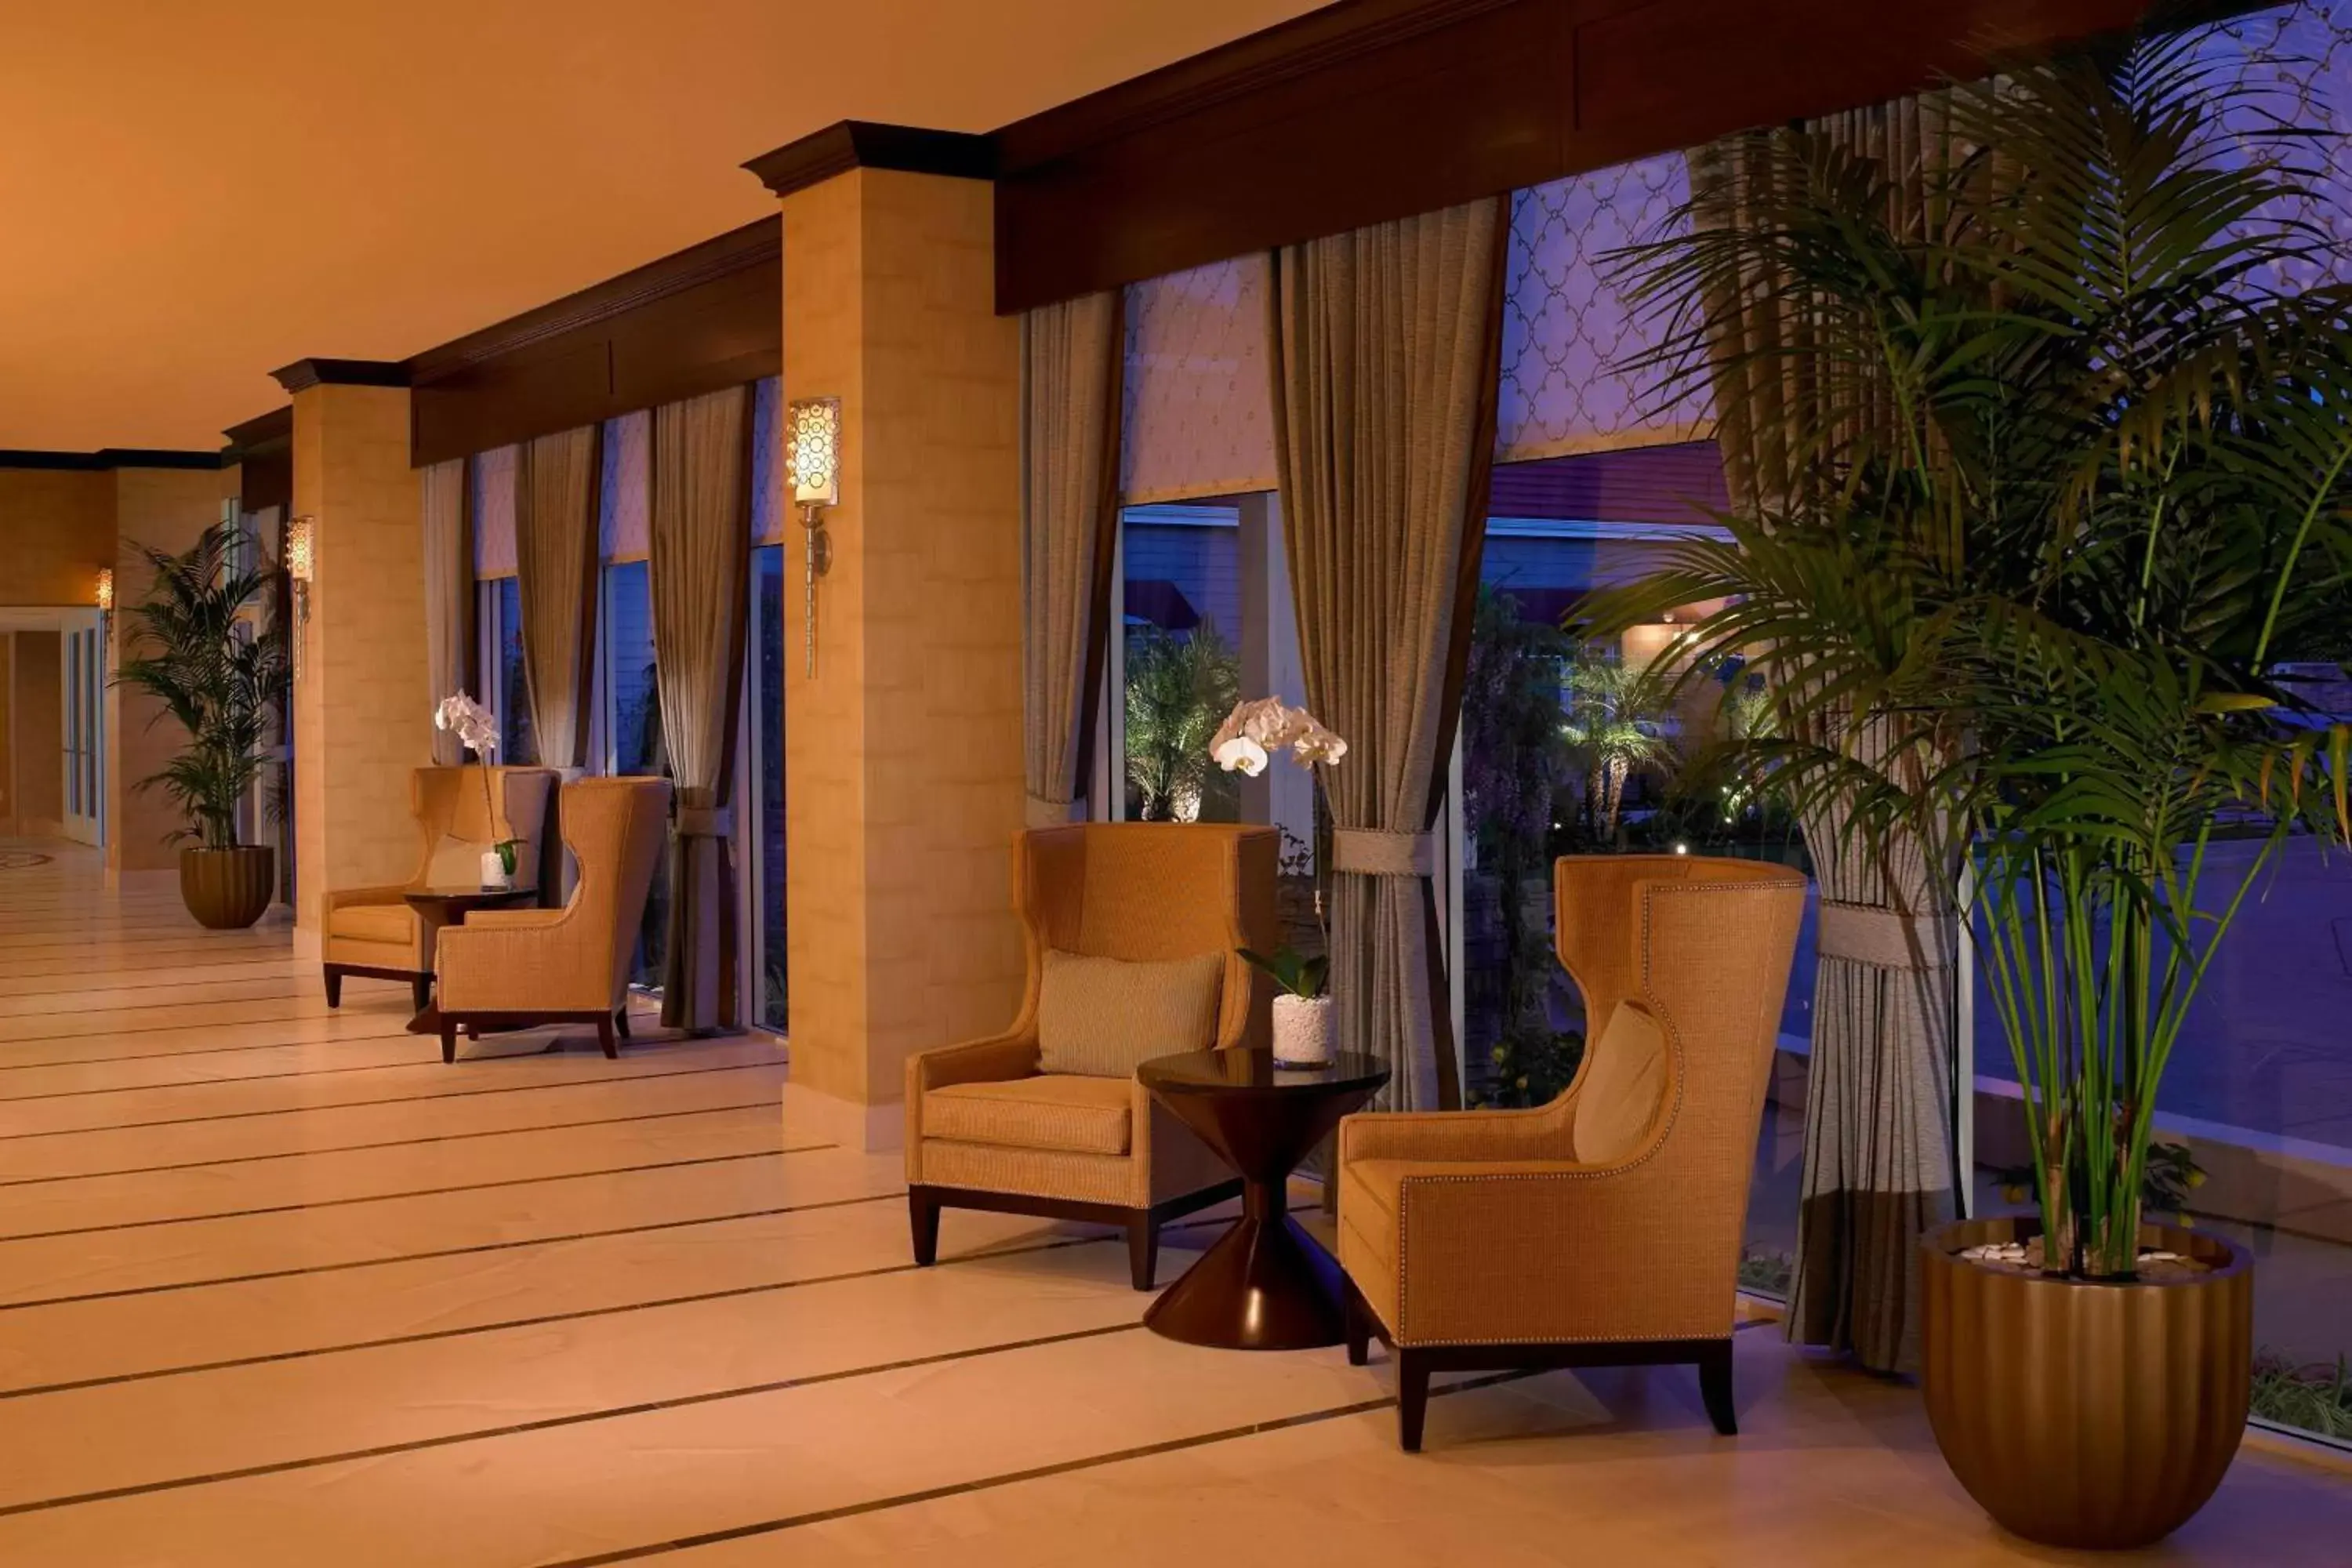 Lobby or reception in Laguna Cliffs Marriott Resort & Spa